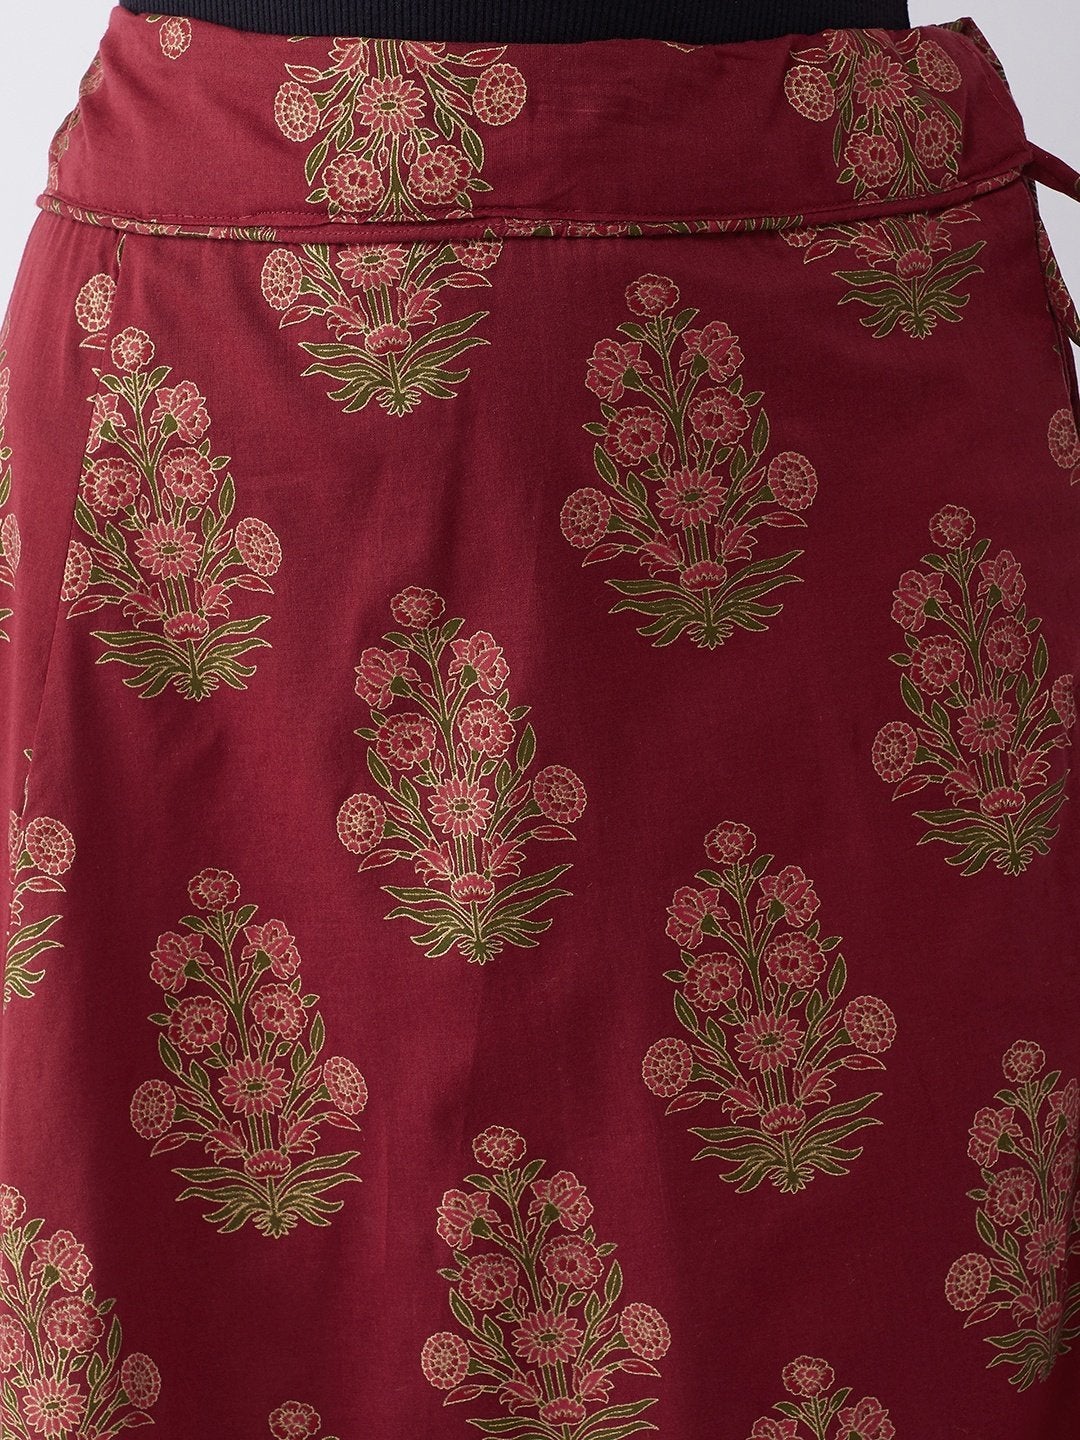 Women's Maroon Gold Boota Print Skirt - InWeave